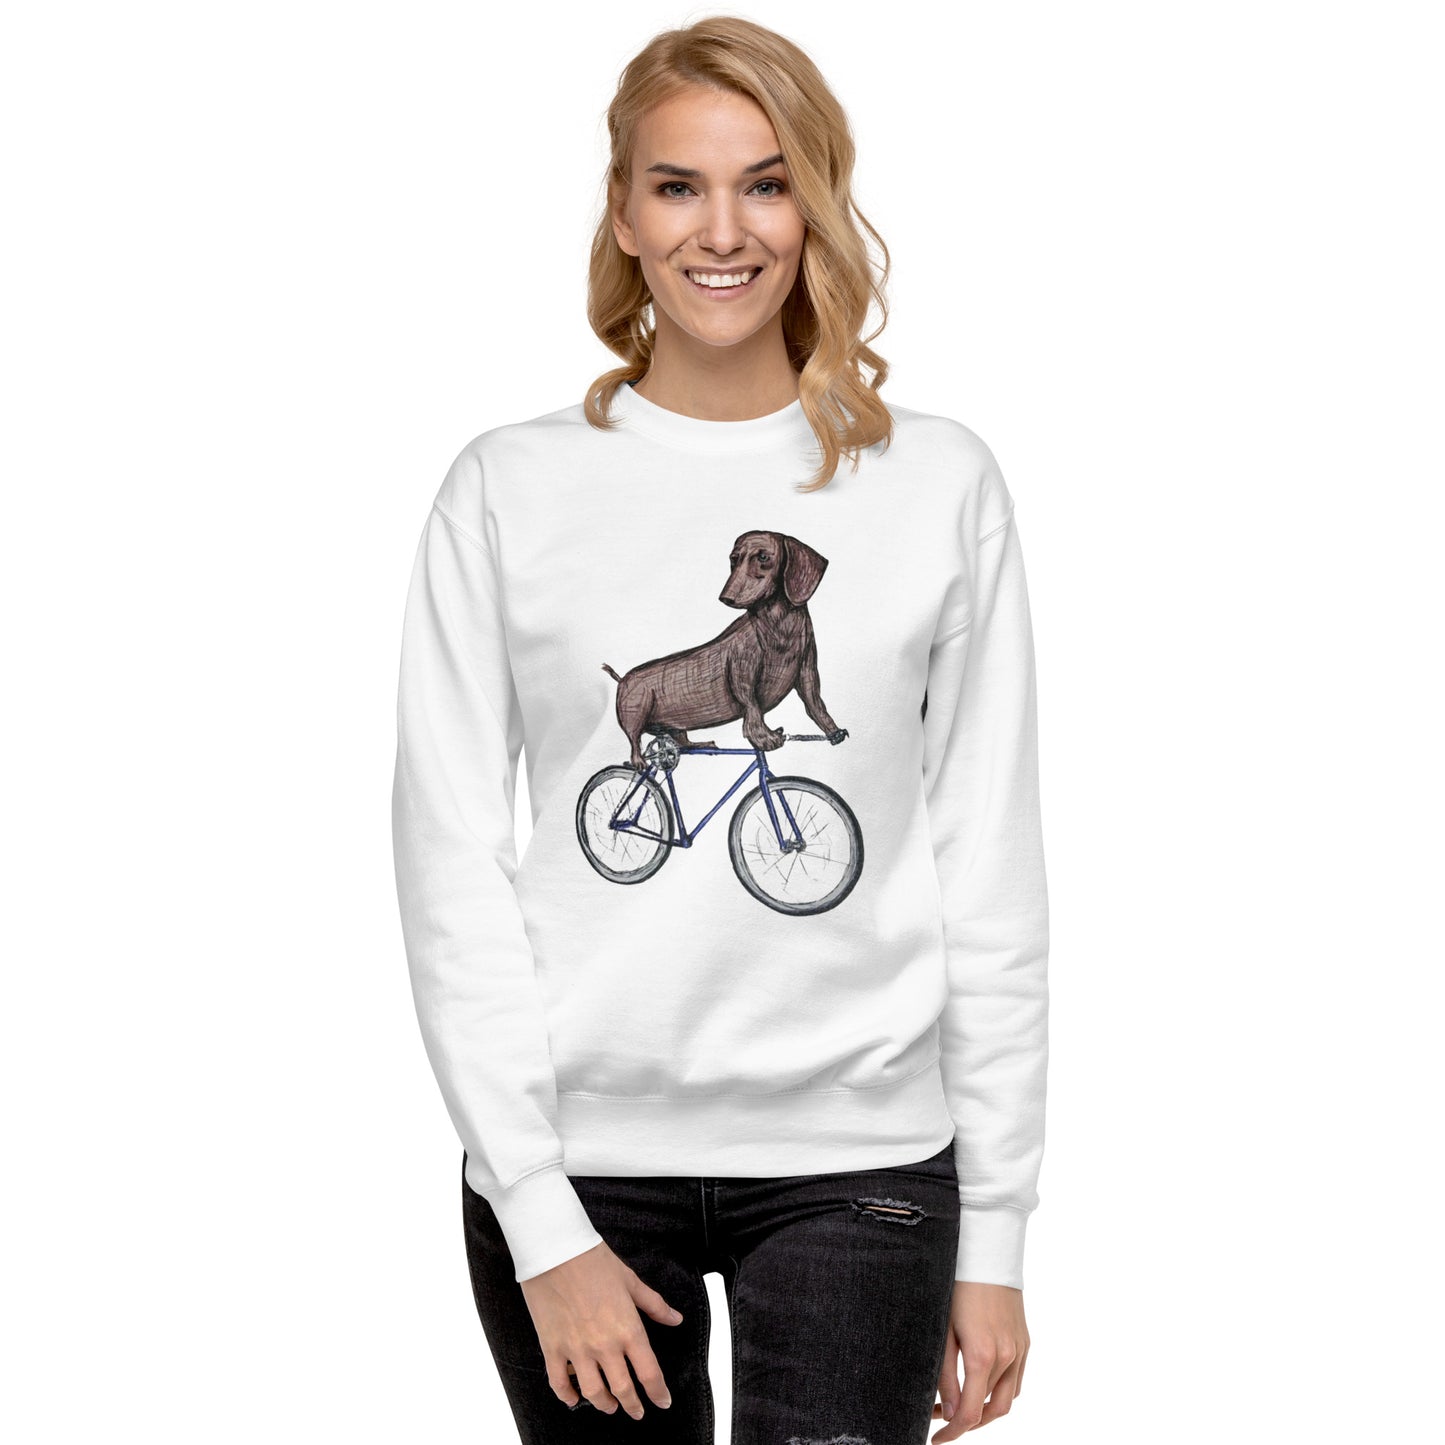 Weiner Cycle Unisex Premium Sweatshirt